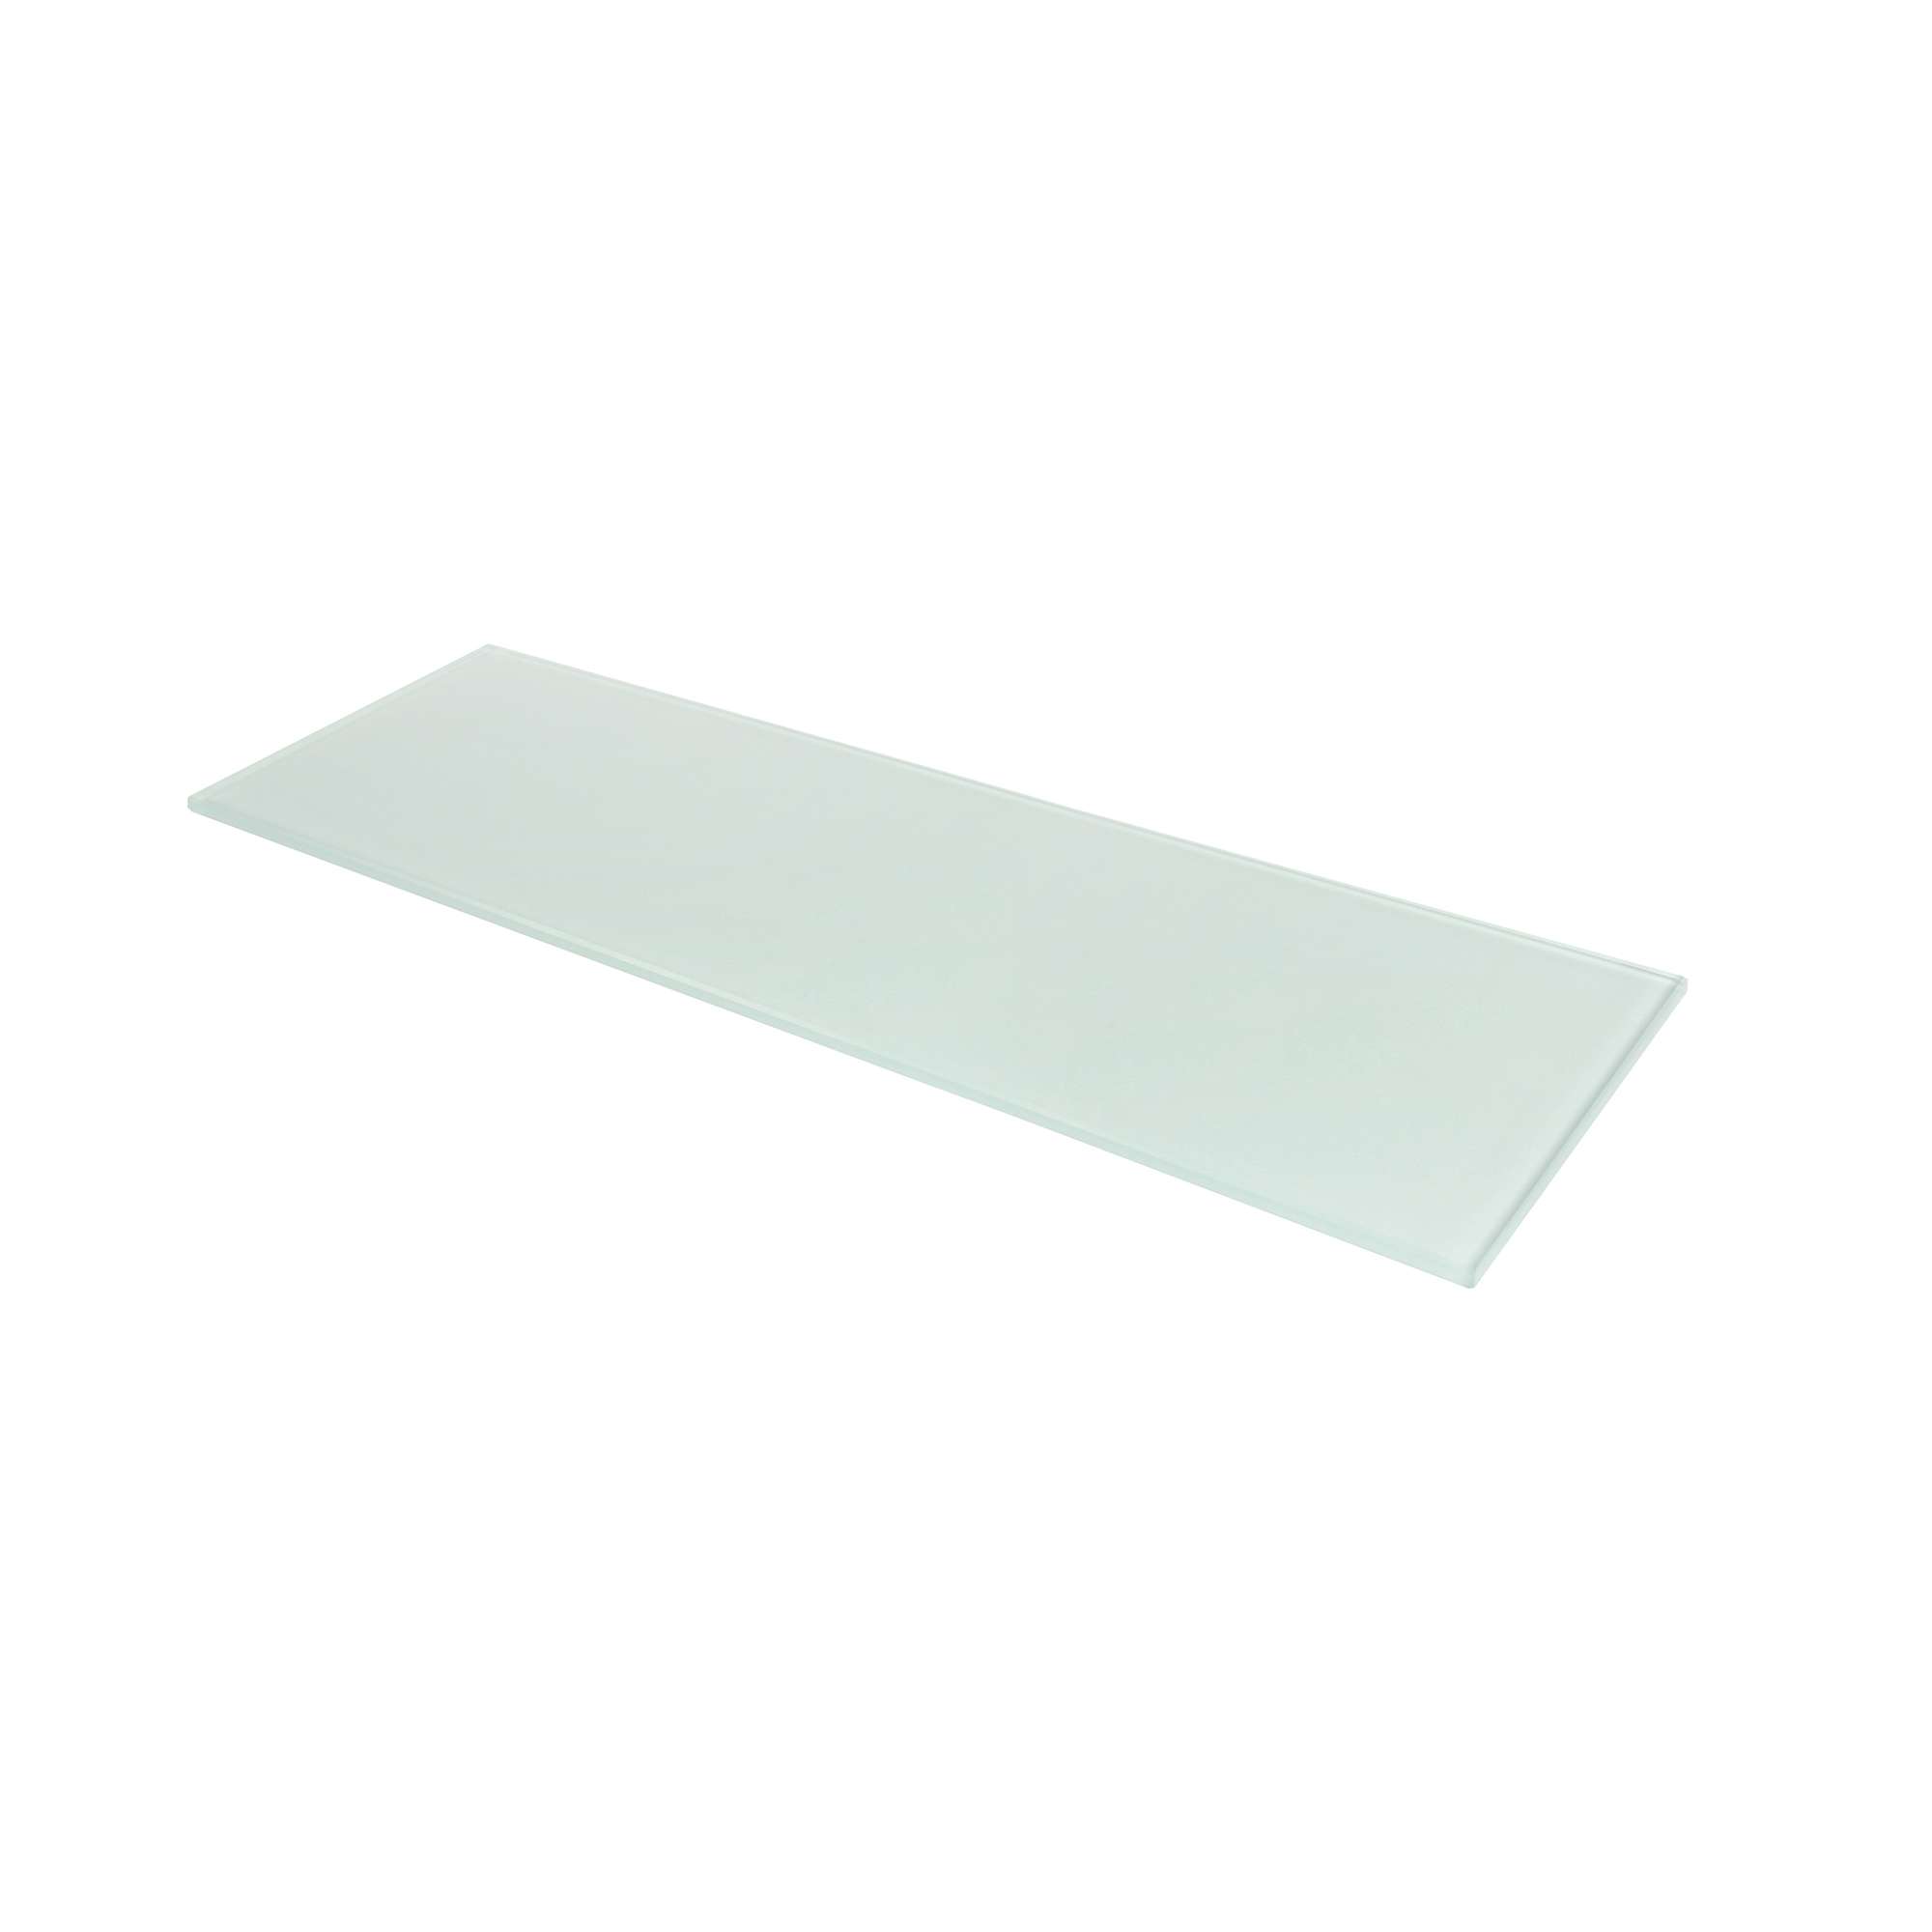 Étagère rectangulaire en verre mat | Mesures 450*6*120mm | Épaisseur de l'étagère : 6 mm | 1 unité